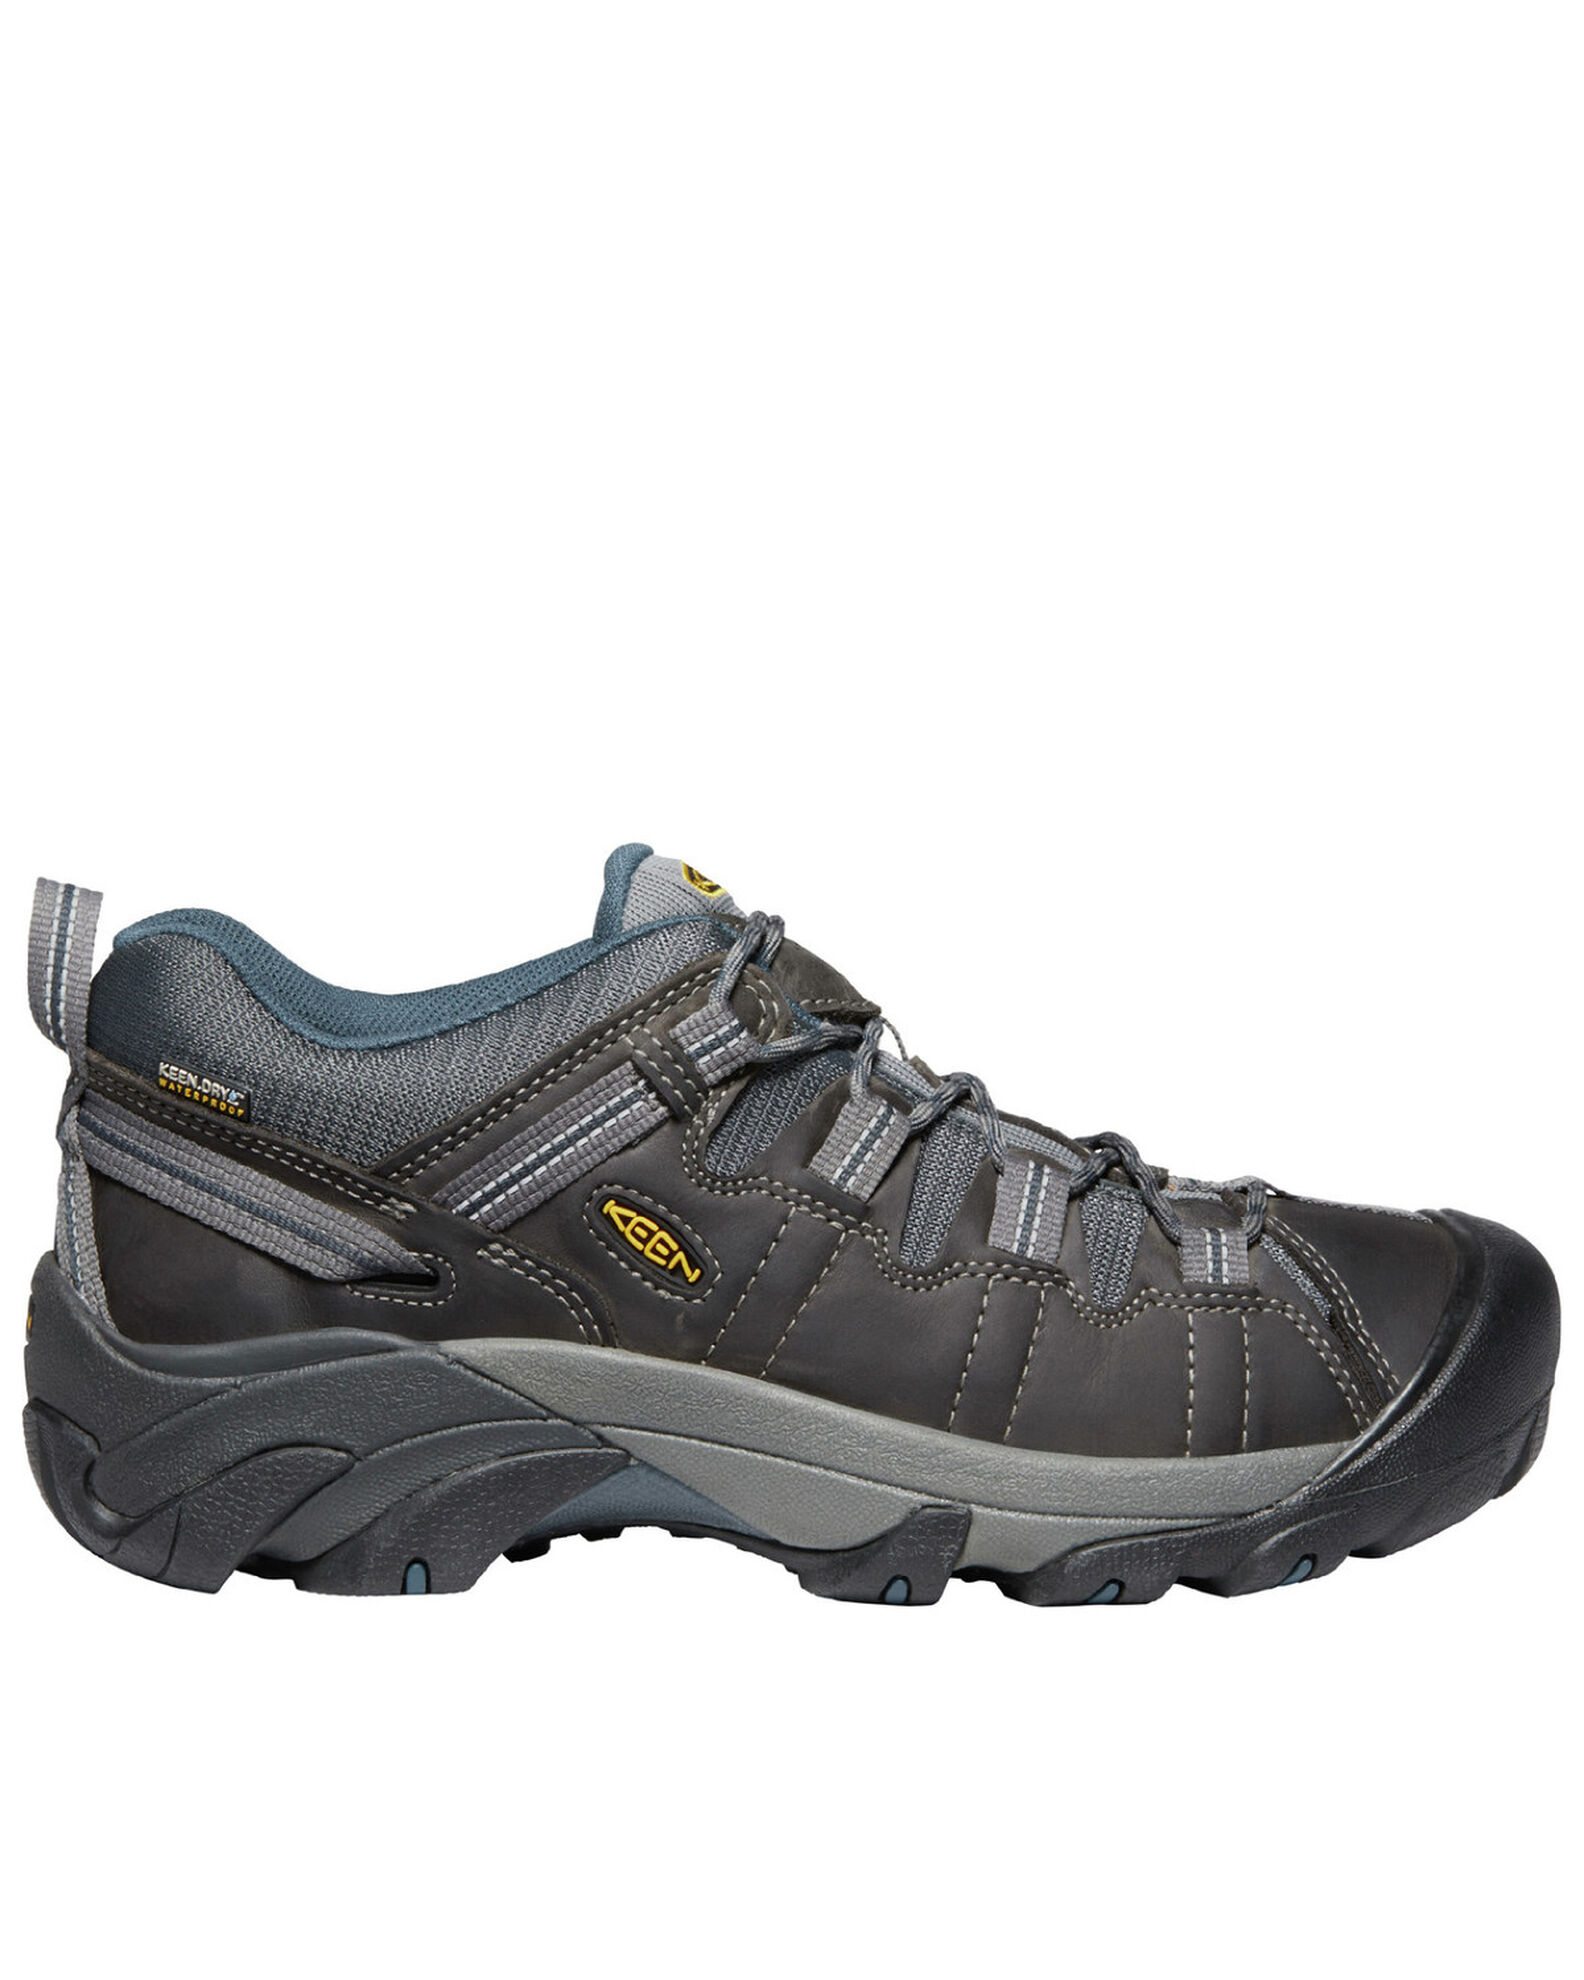 Keen Men's Targhee II Waterproof Hiking Boots - Soft Toe